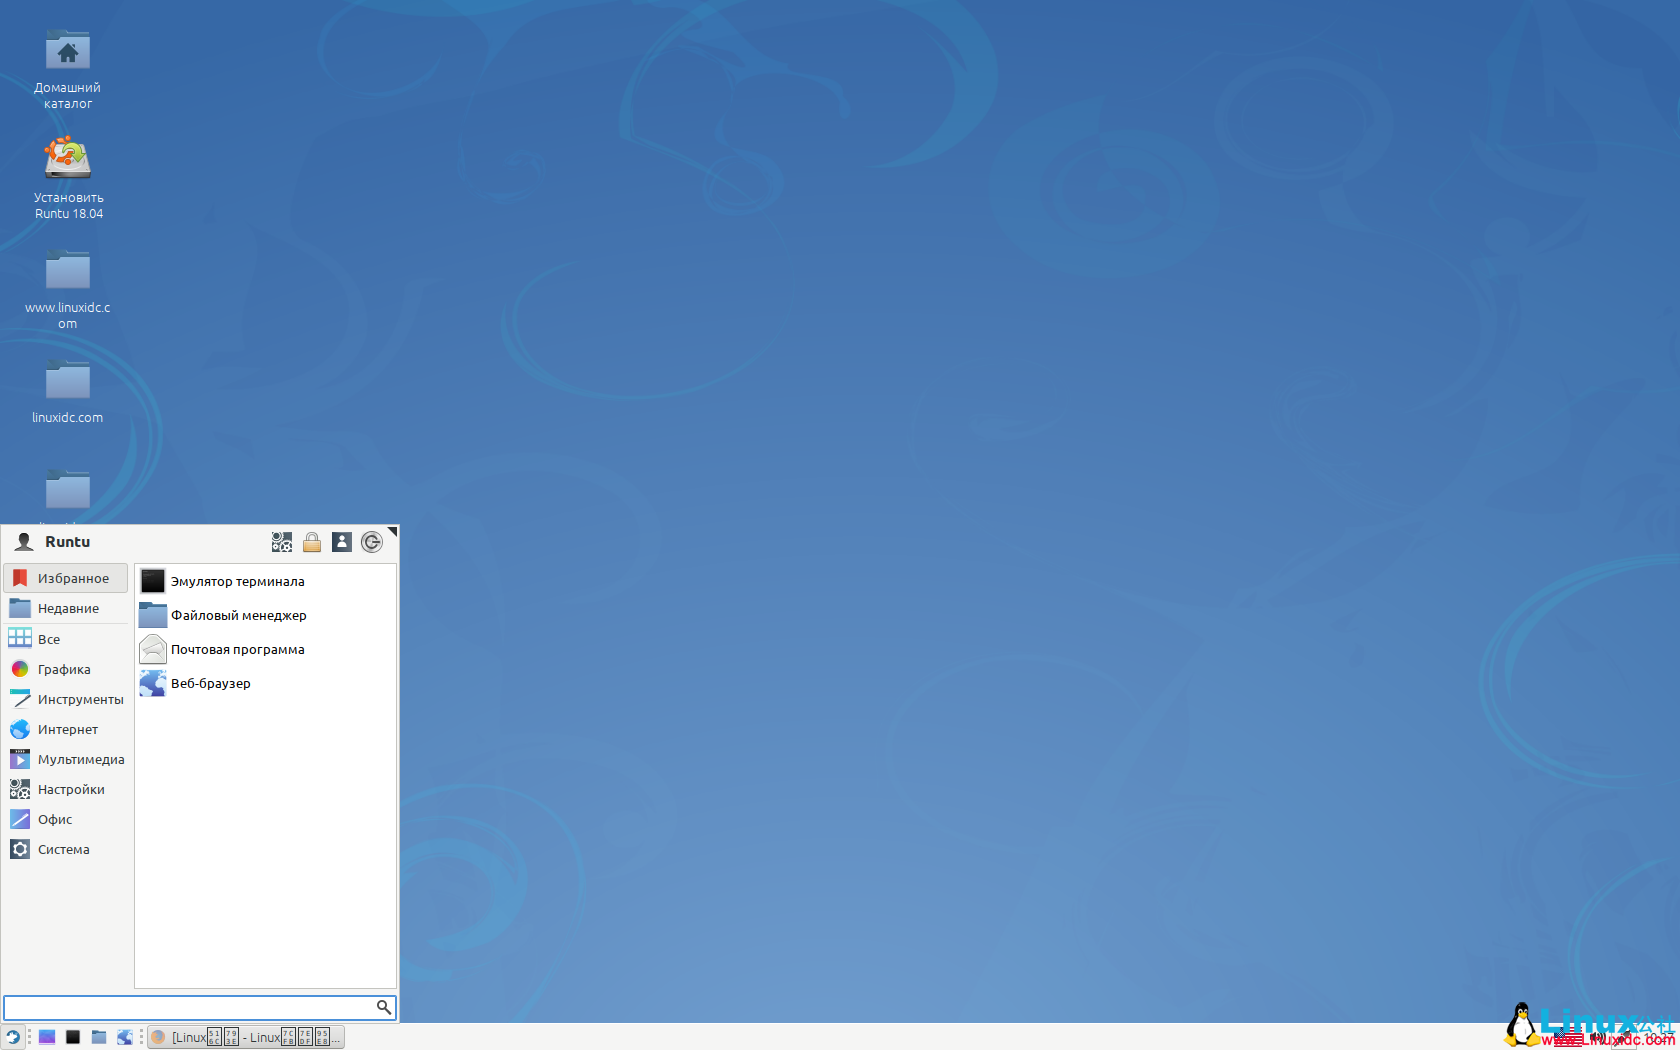 俄语桌面Linux发行版Runtu 18.04.3 正式发布俄语桌面Linux发行版Runtu 18.04.3 正式发布